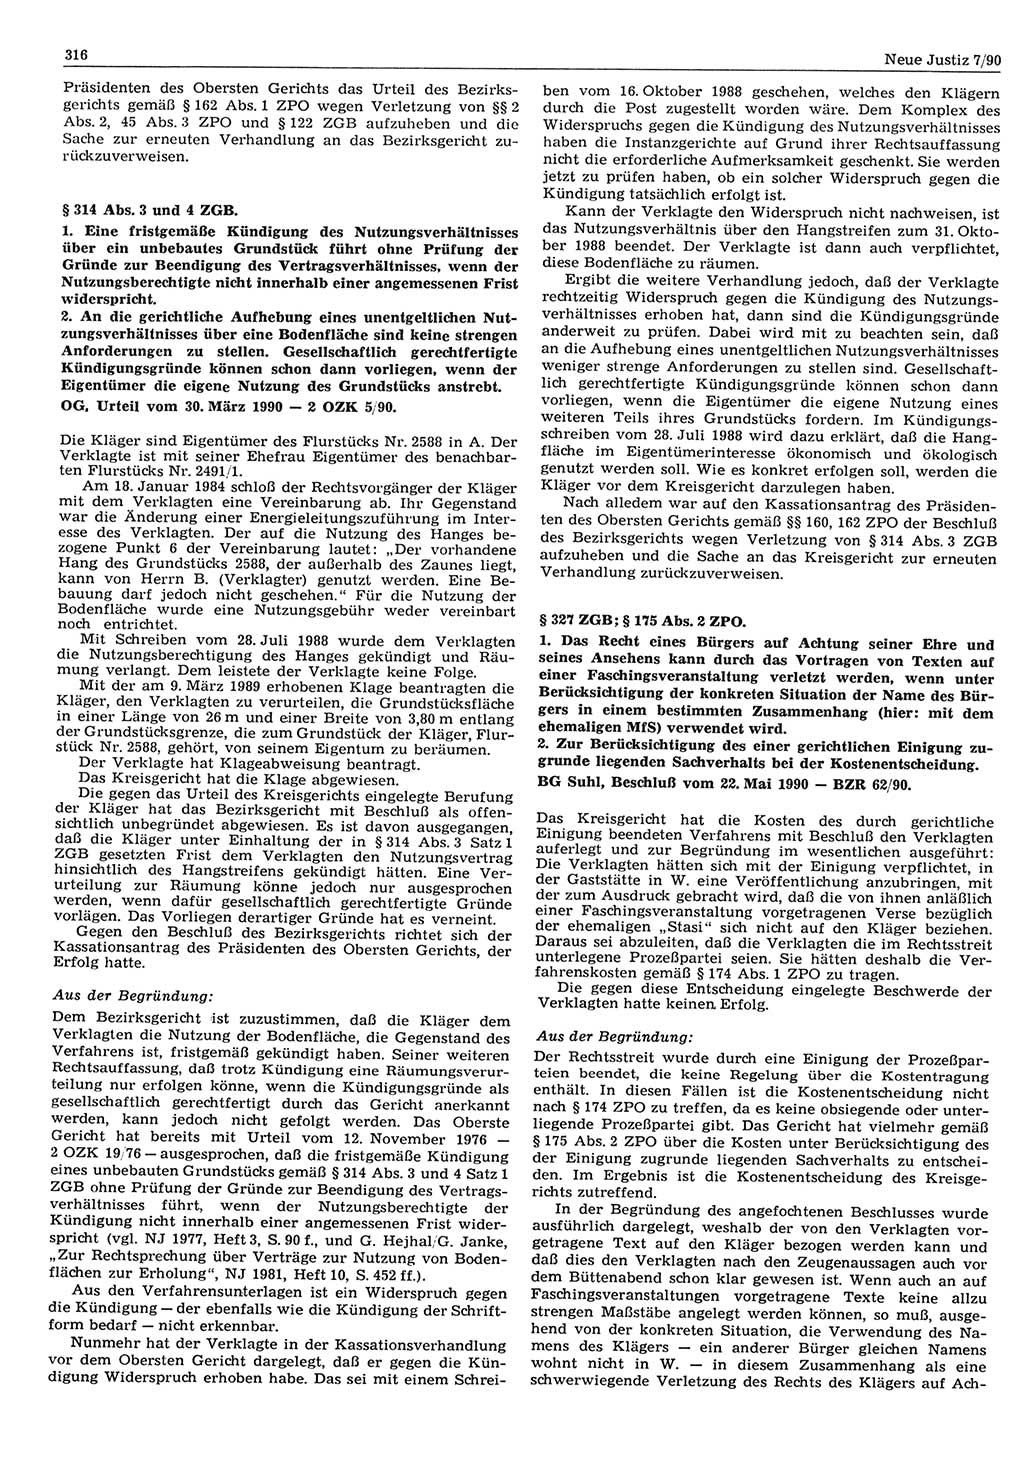 Neue Justiz (NJ), Zeitschrift für Rechtsetzung und Rechtsanwendung [Deutsche Demokratische Republik (DDR)], 44. Jahrgang 1990, Seite 316 (NJ DDR 1990, S. 316)